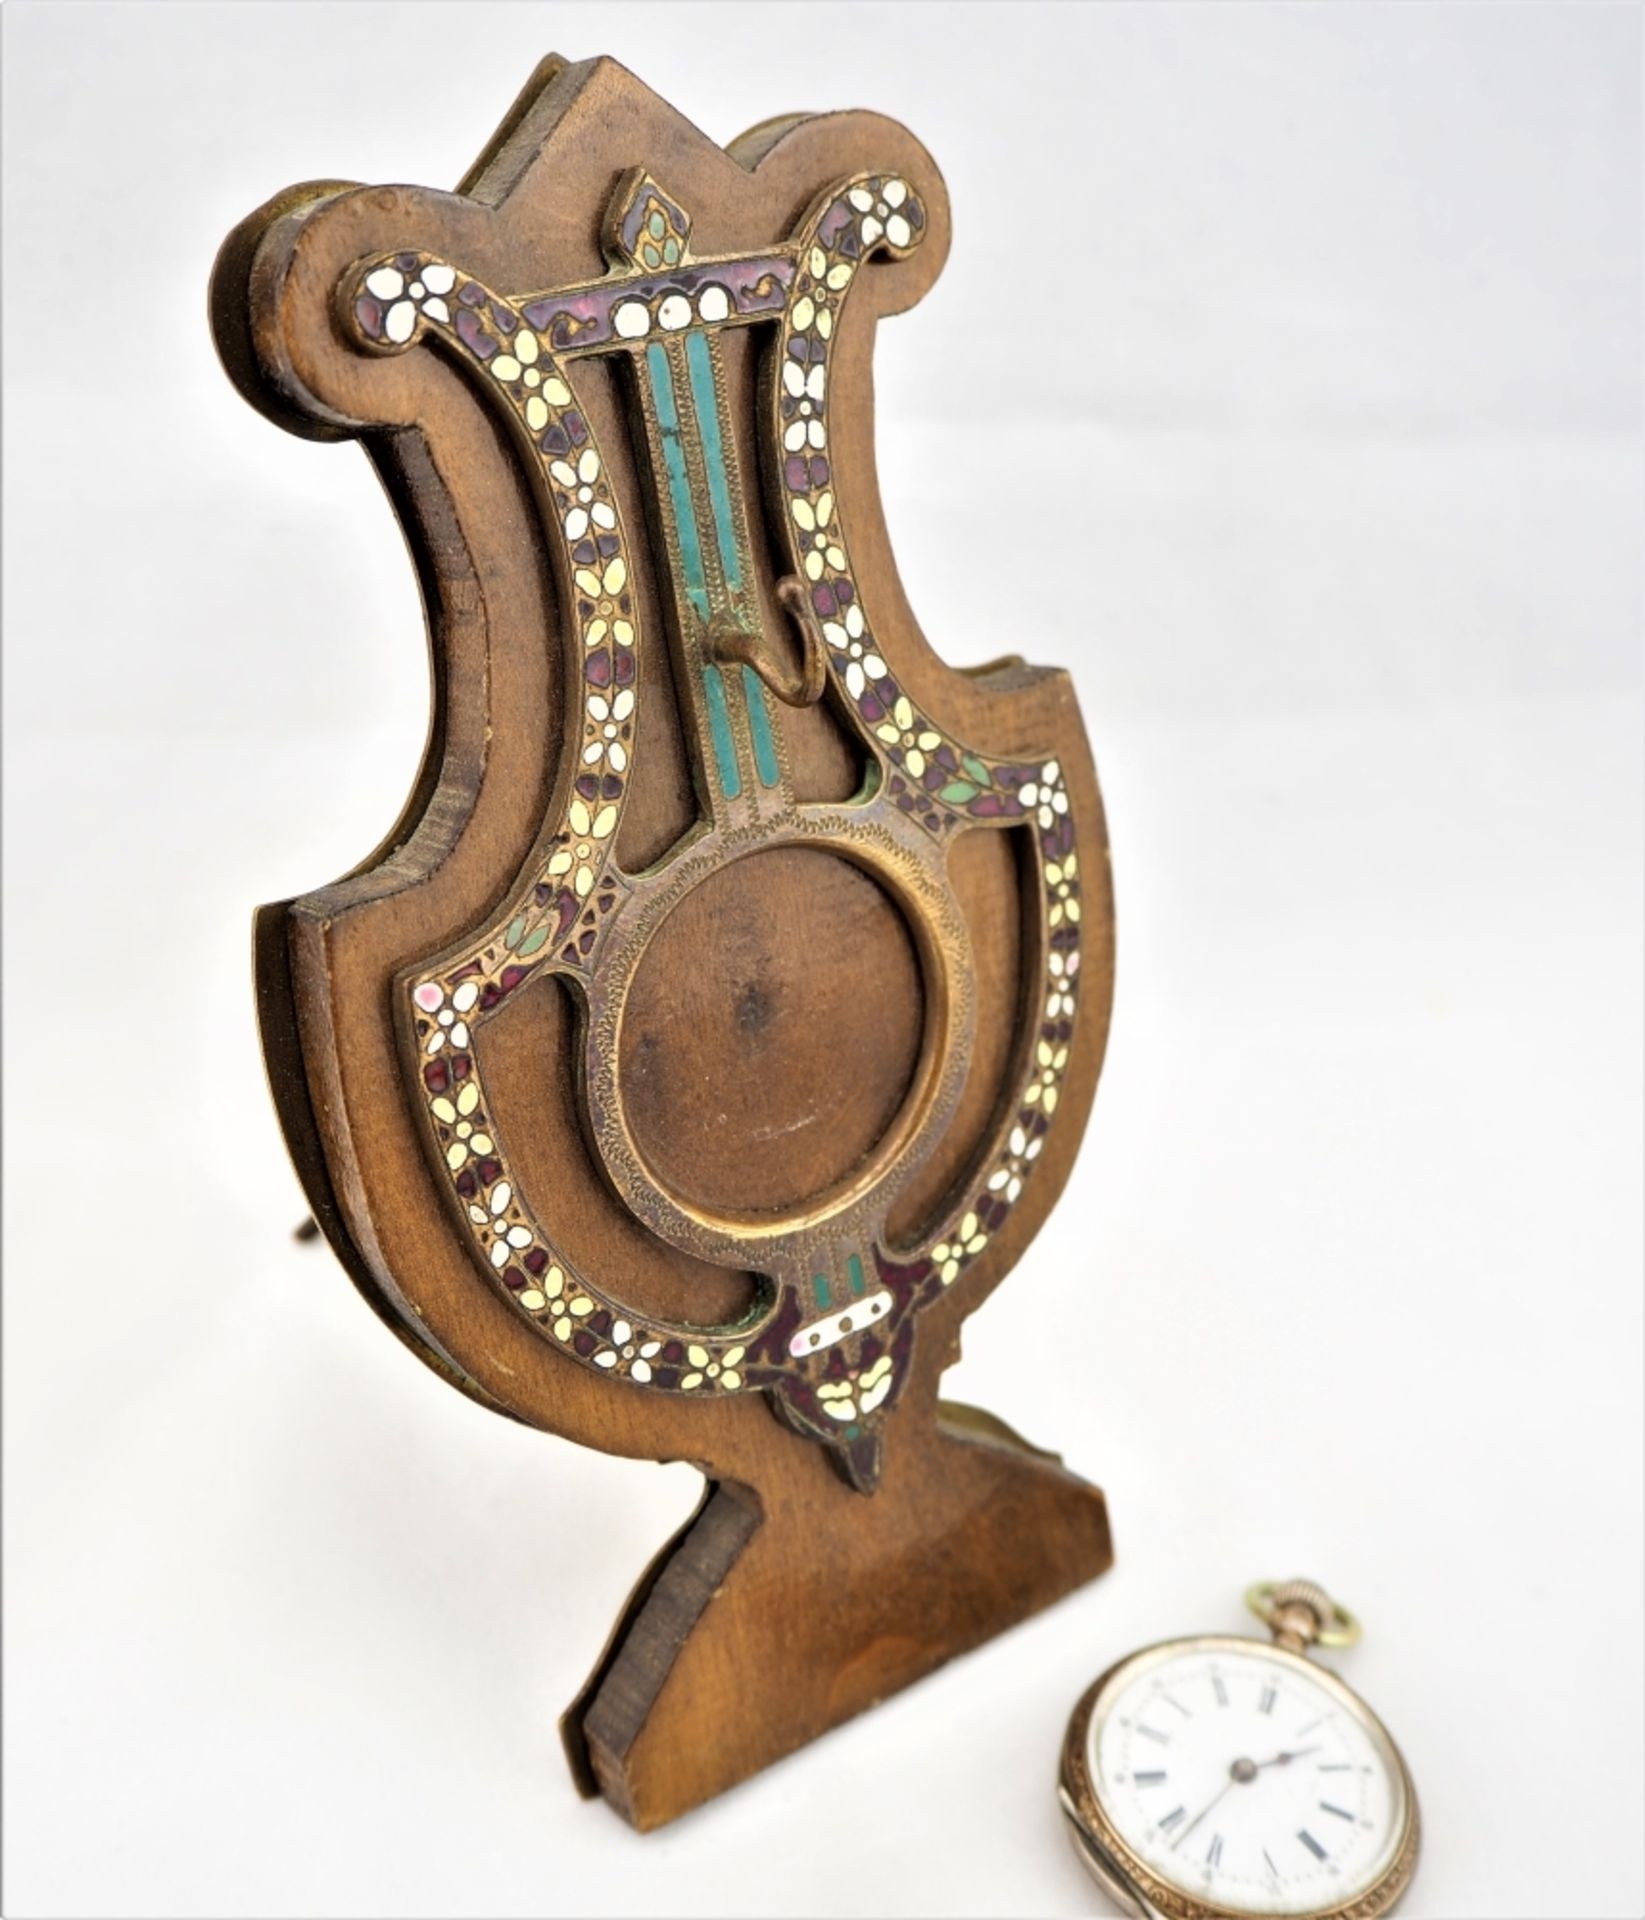 Taschenuhrenhalter um 1820Ausgefallener Taschenuhrenhalter aus der Biedermeierzeit um 18 - Bild 2 aus 3